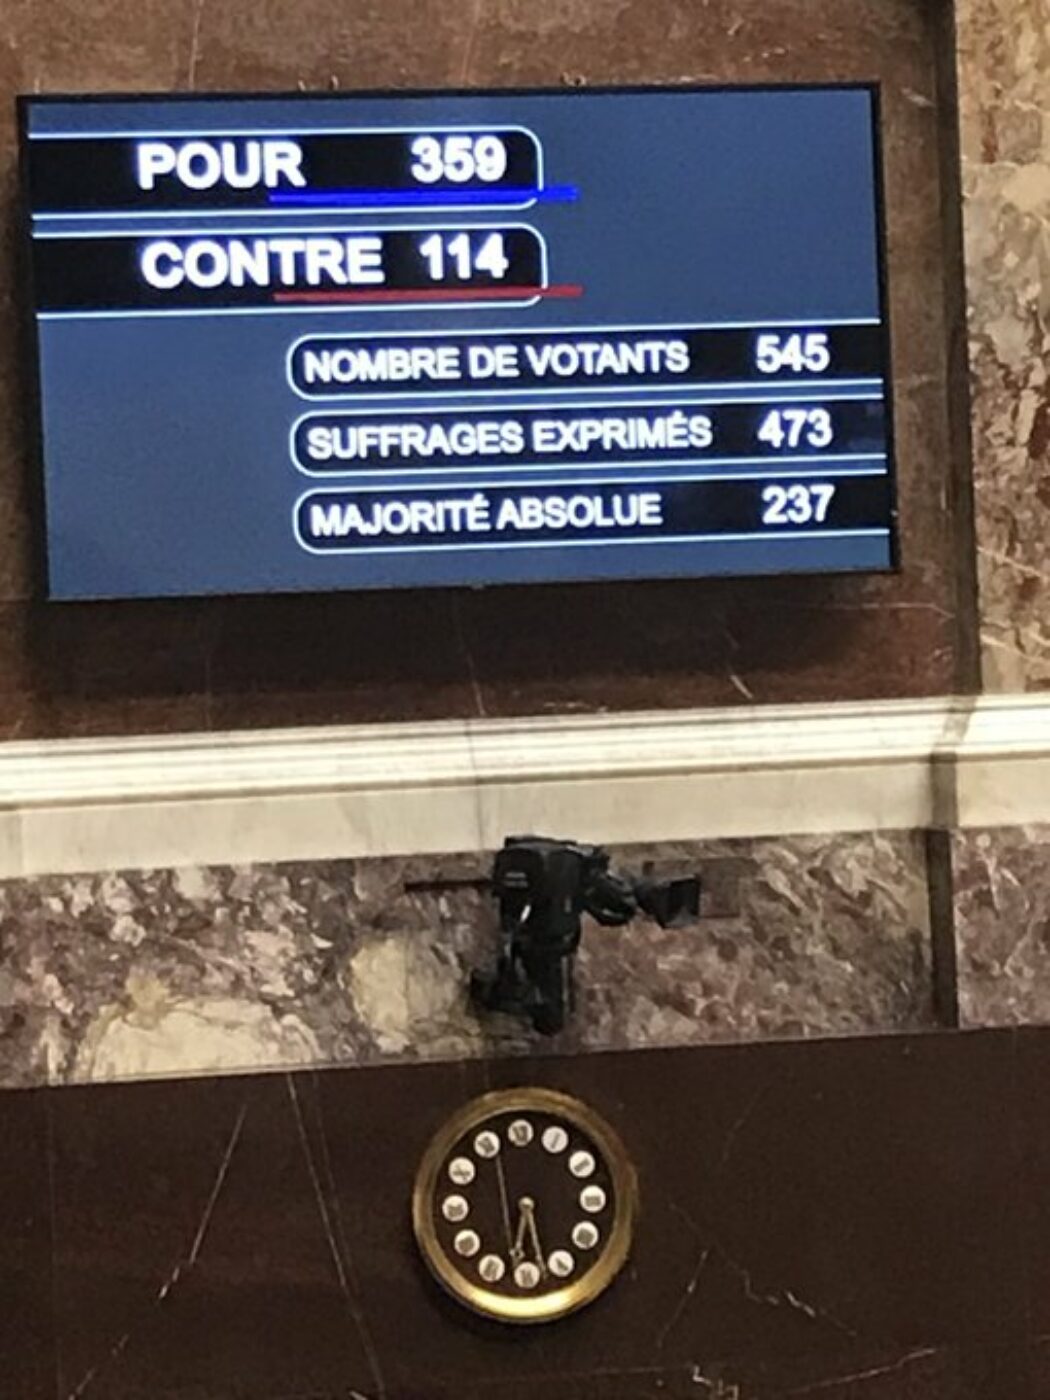 114 députés votent contre la loi de bioéthique